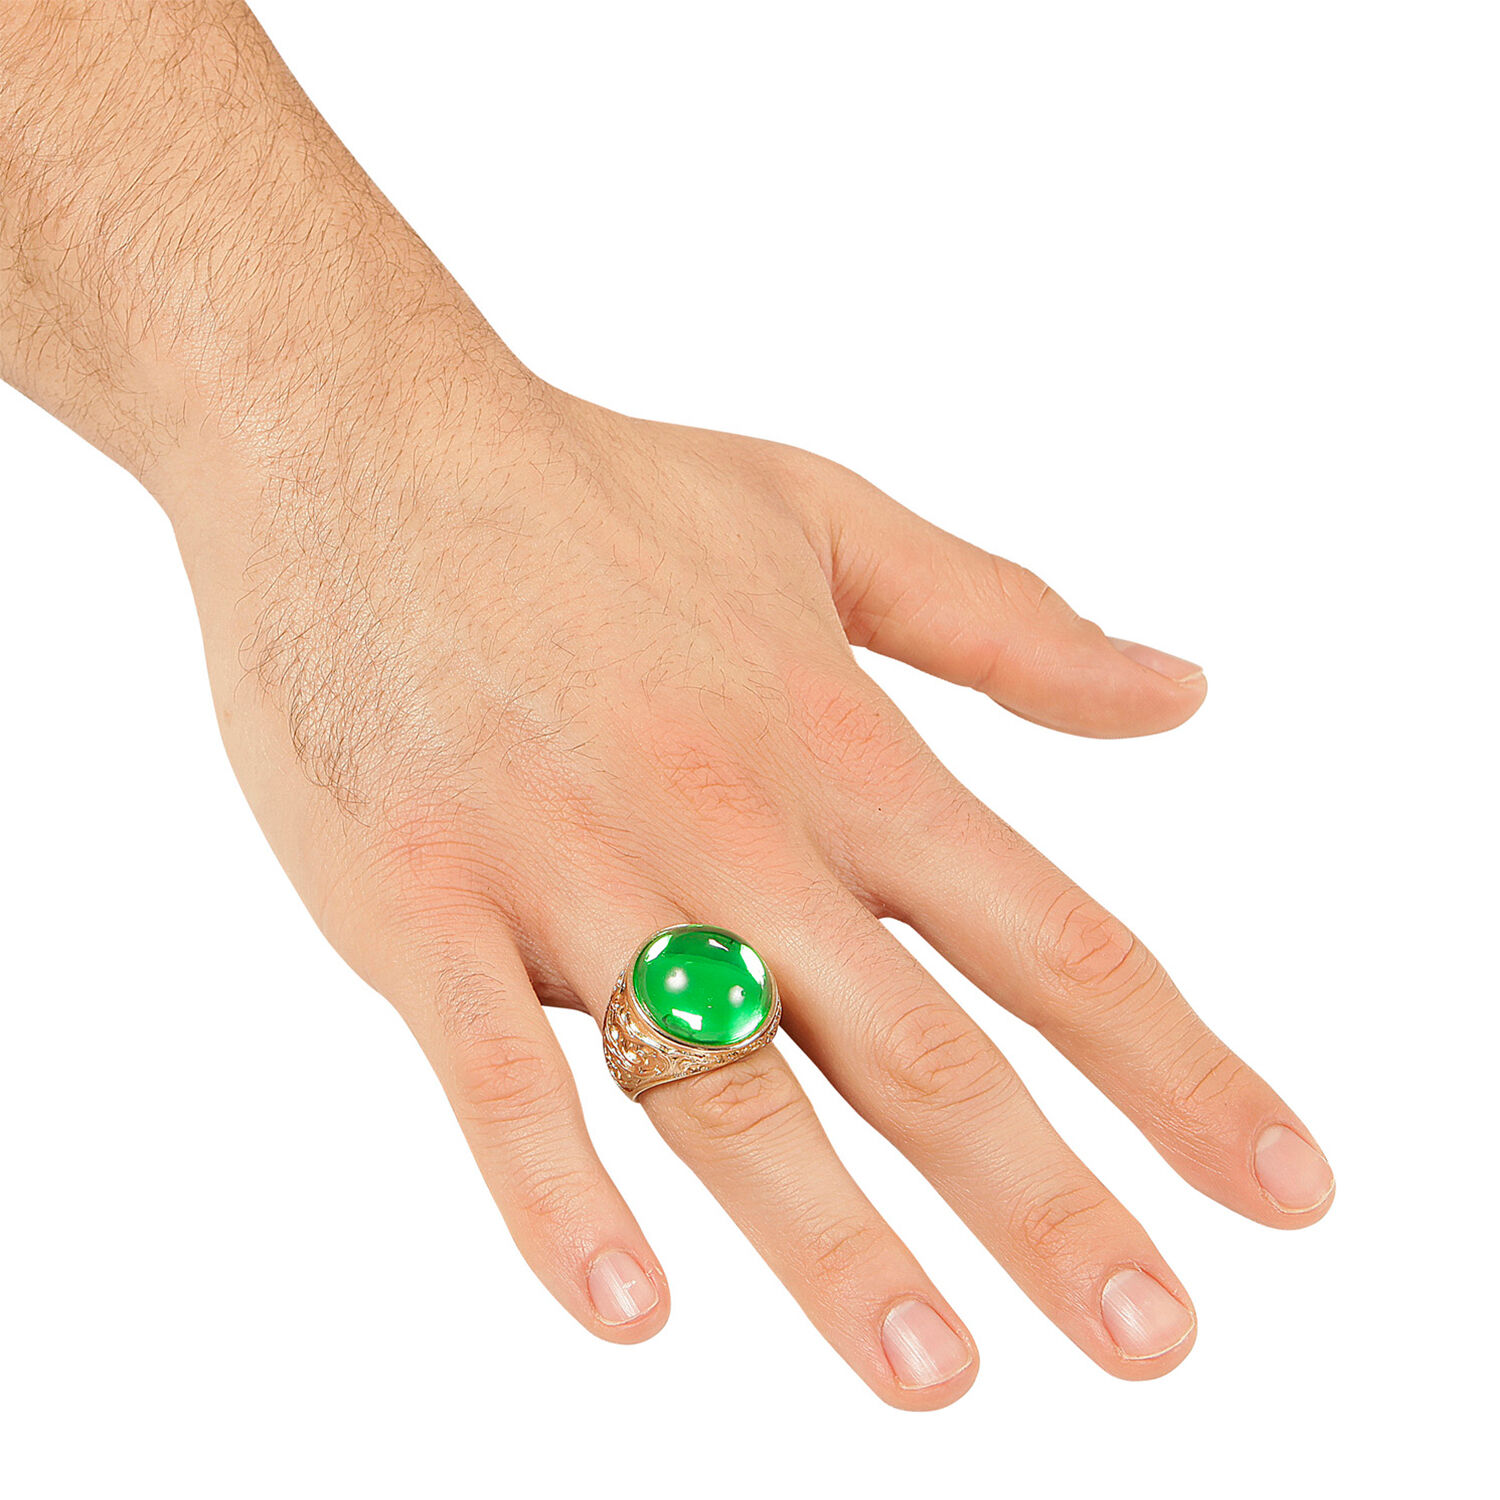 NEU Schöner goldener Ring mit grünem Stein für Pirat, Mittelalter & Co., Einheitsgröße Bild 2